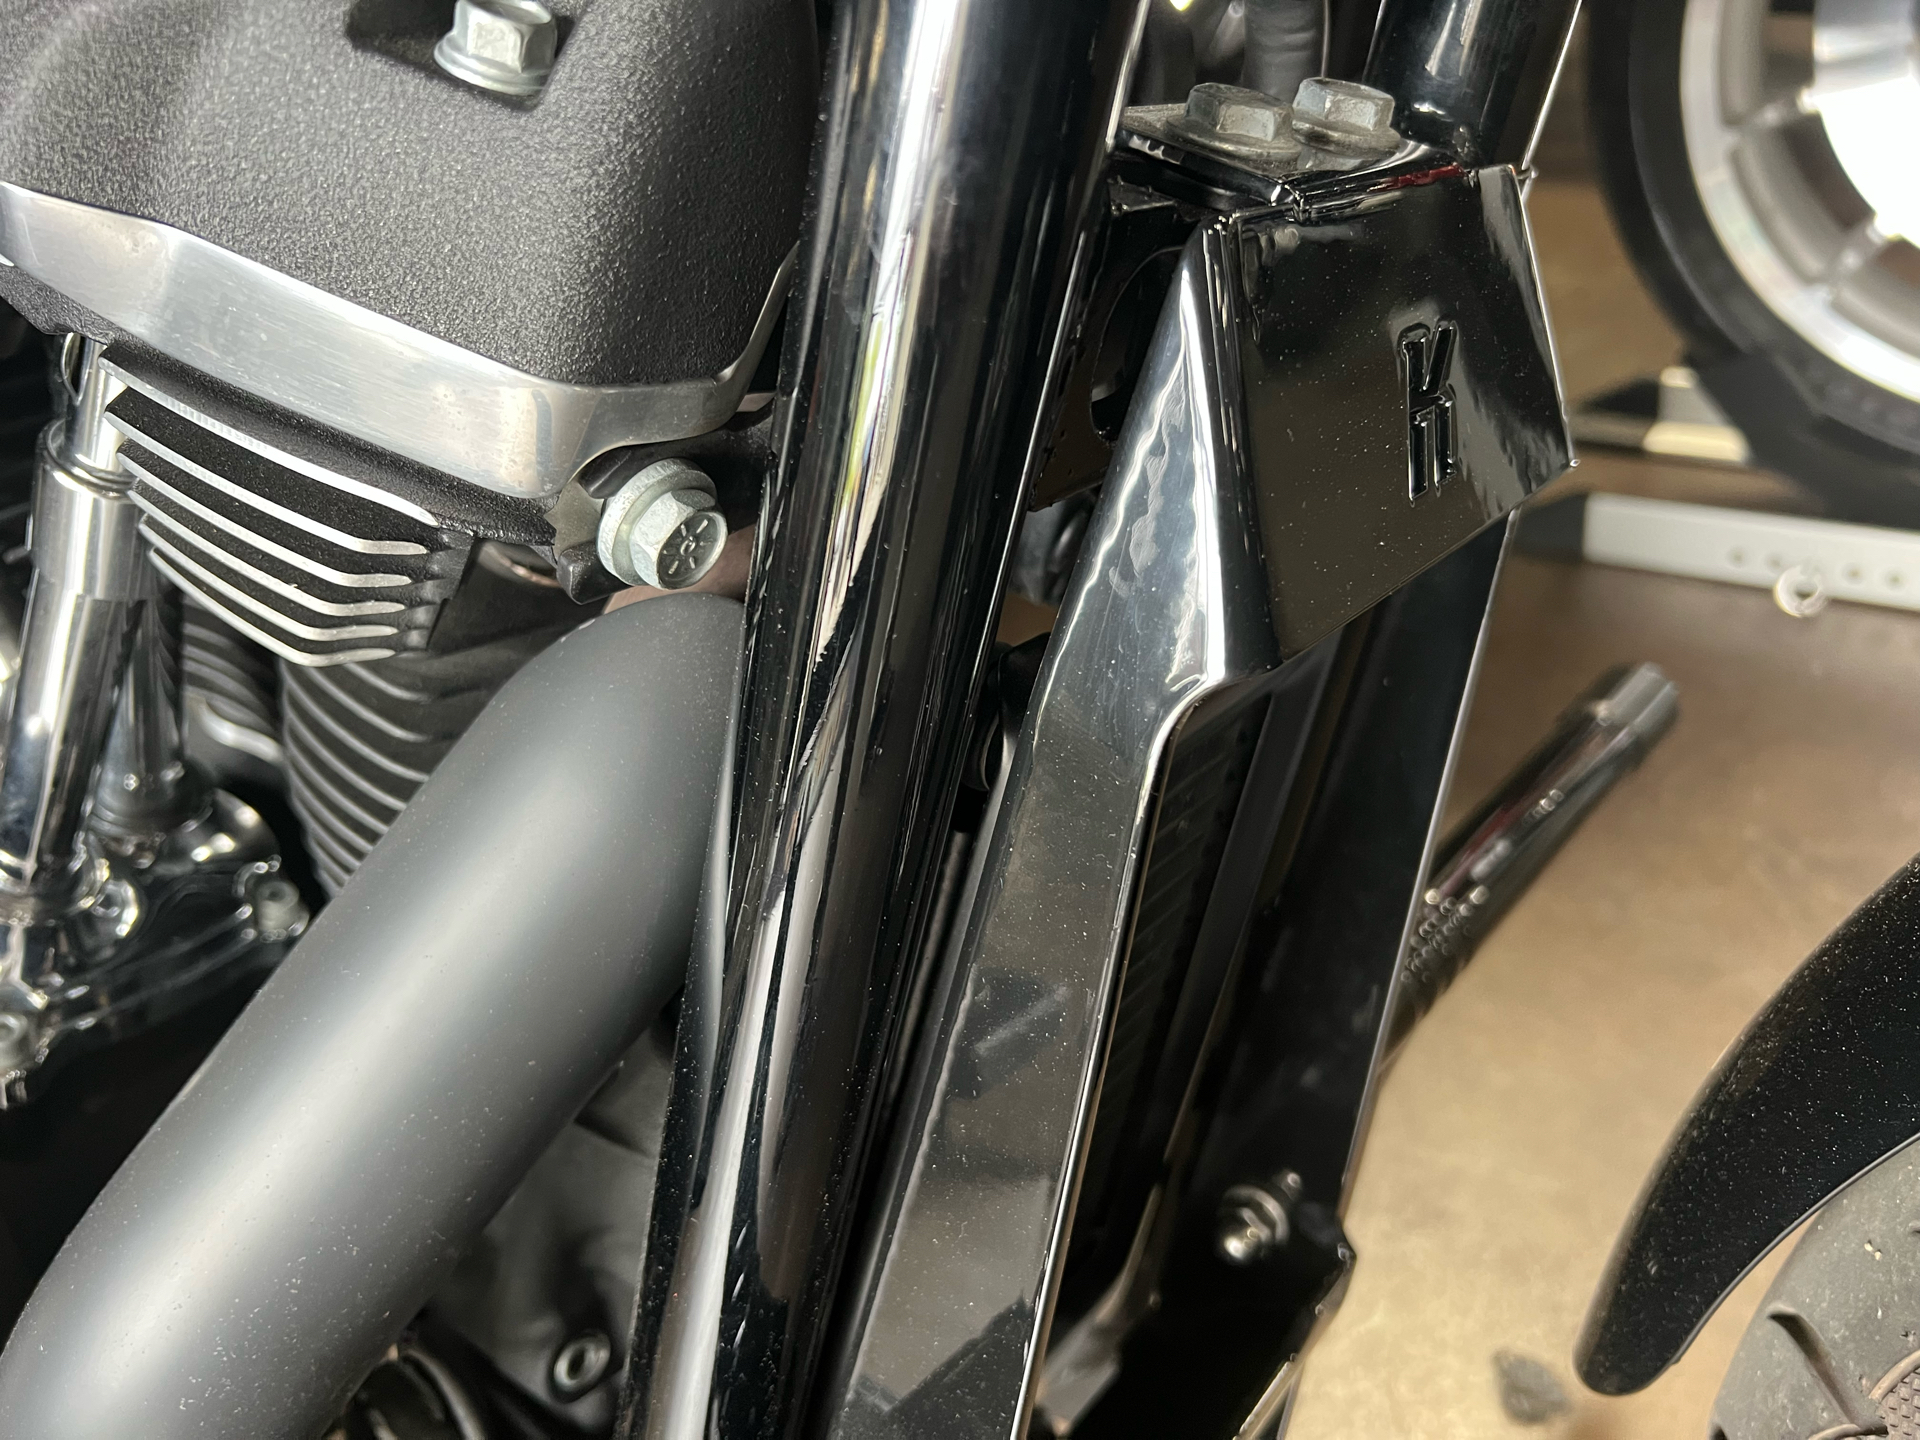 2019 Harley-Davidson Street Bob® in San Jose, California - Photo 6